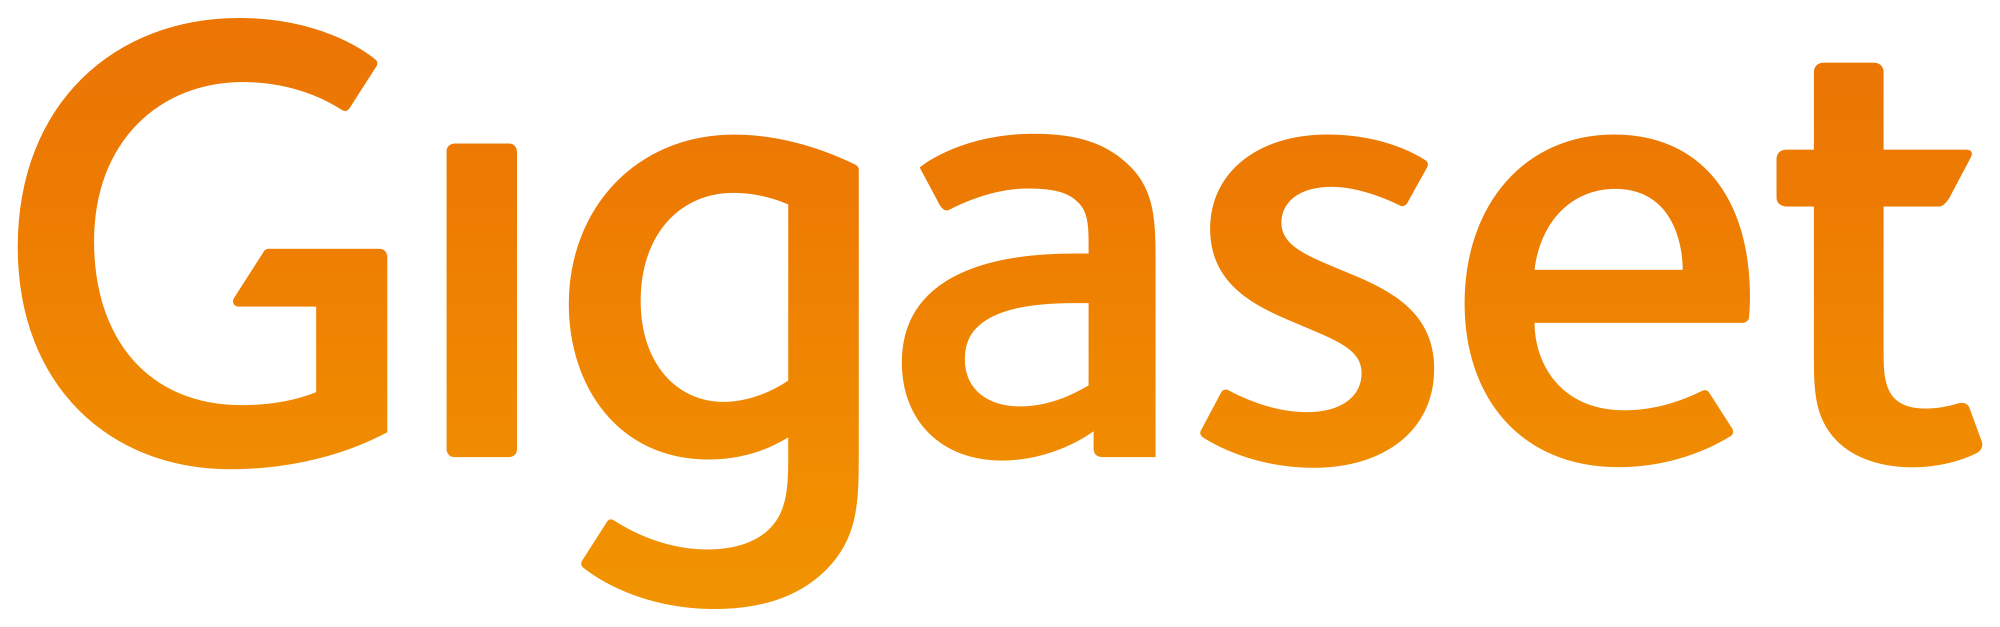 gigaset logo